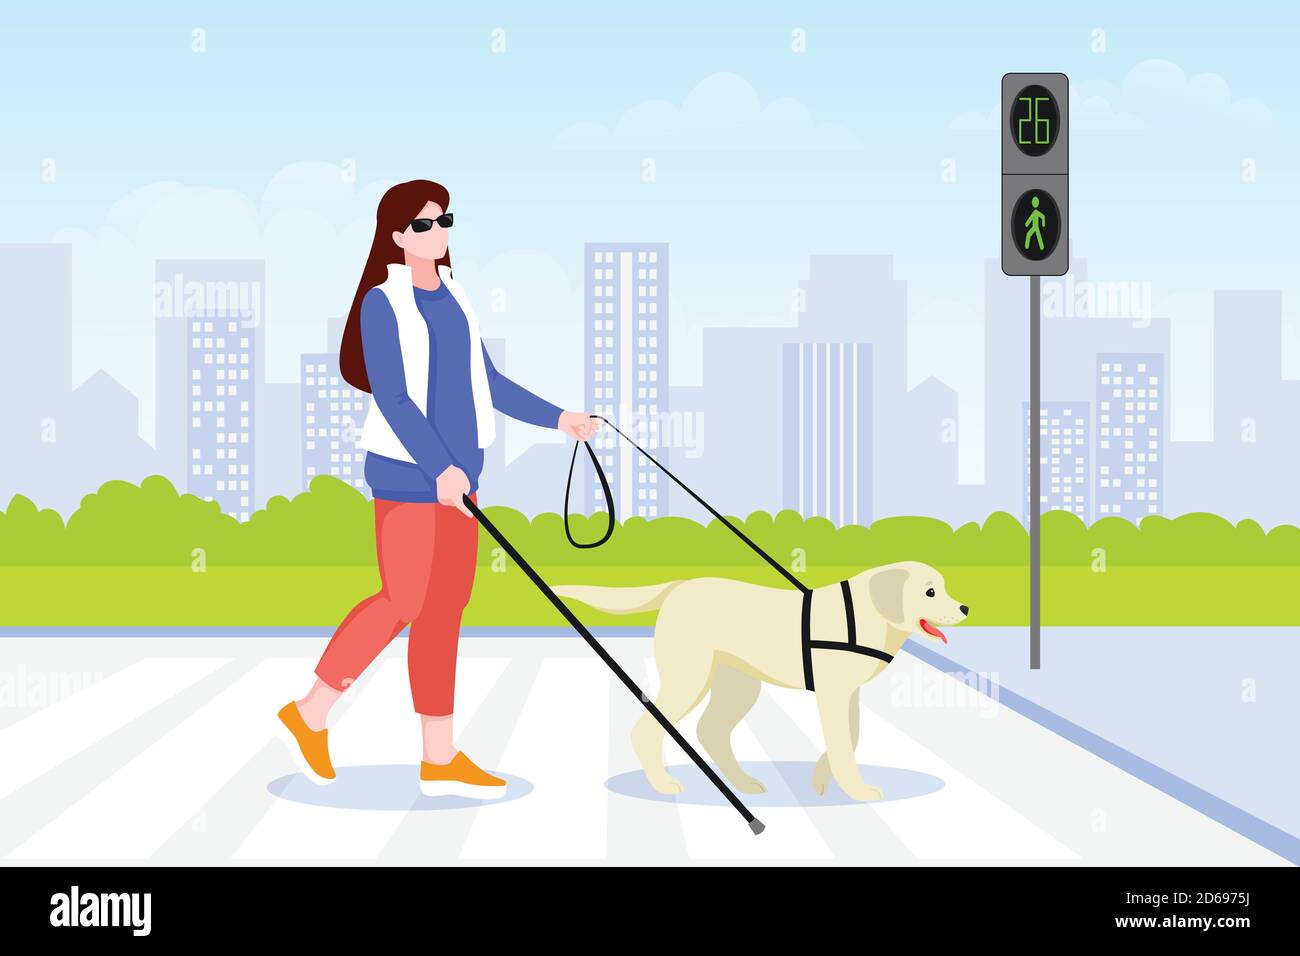 Une jeune femme aveugle traverse la rue avec un chien-guide. Labrador retriever aider les femmes handicapées à traverser pour piétons. Illustrat de dessin animé vectoriel plat Illustration de Vecteur